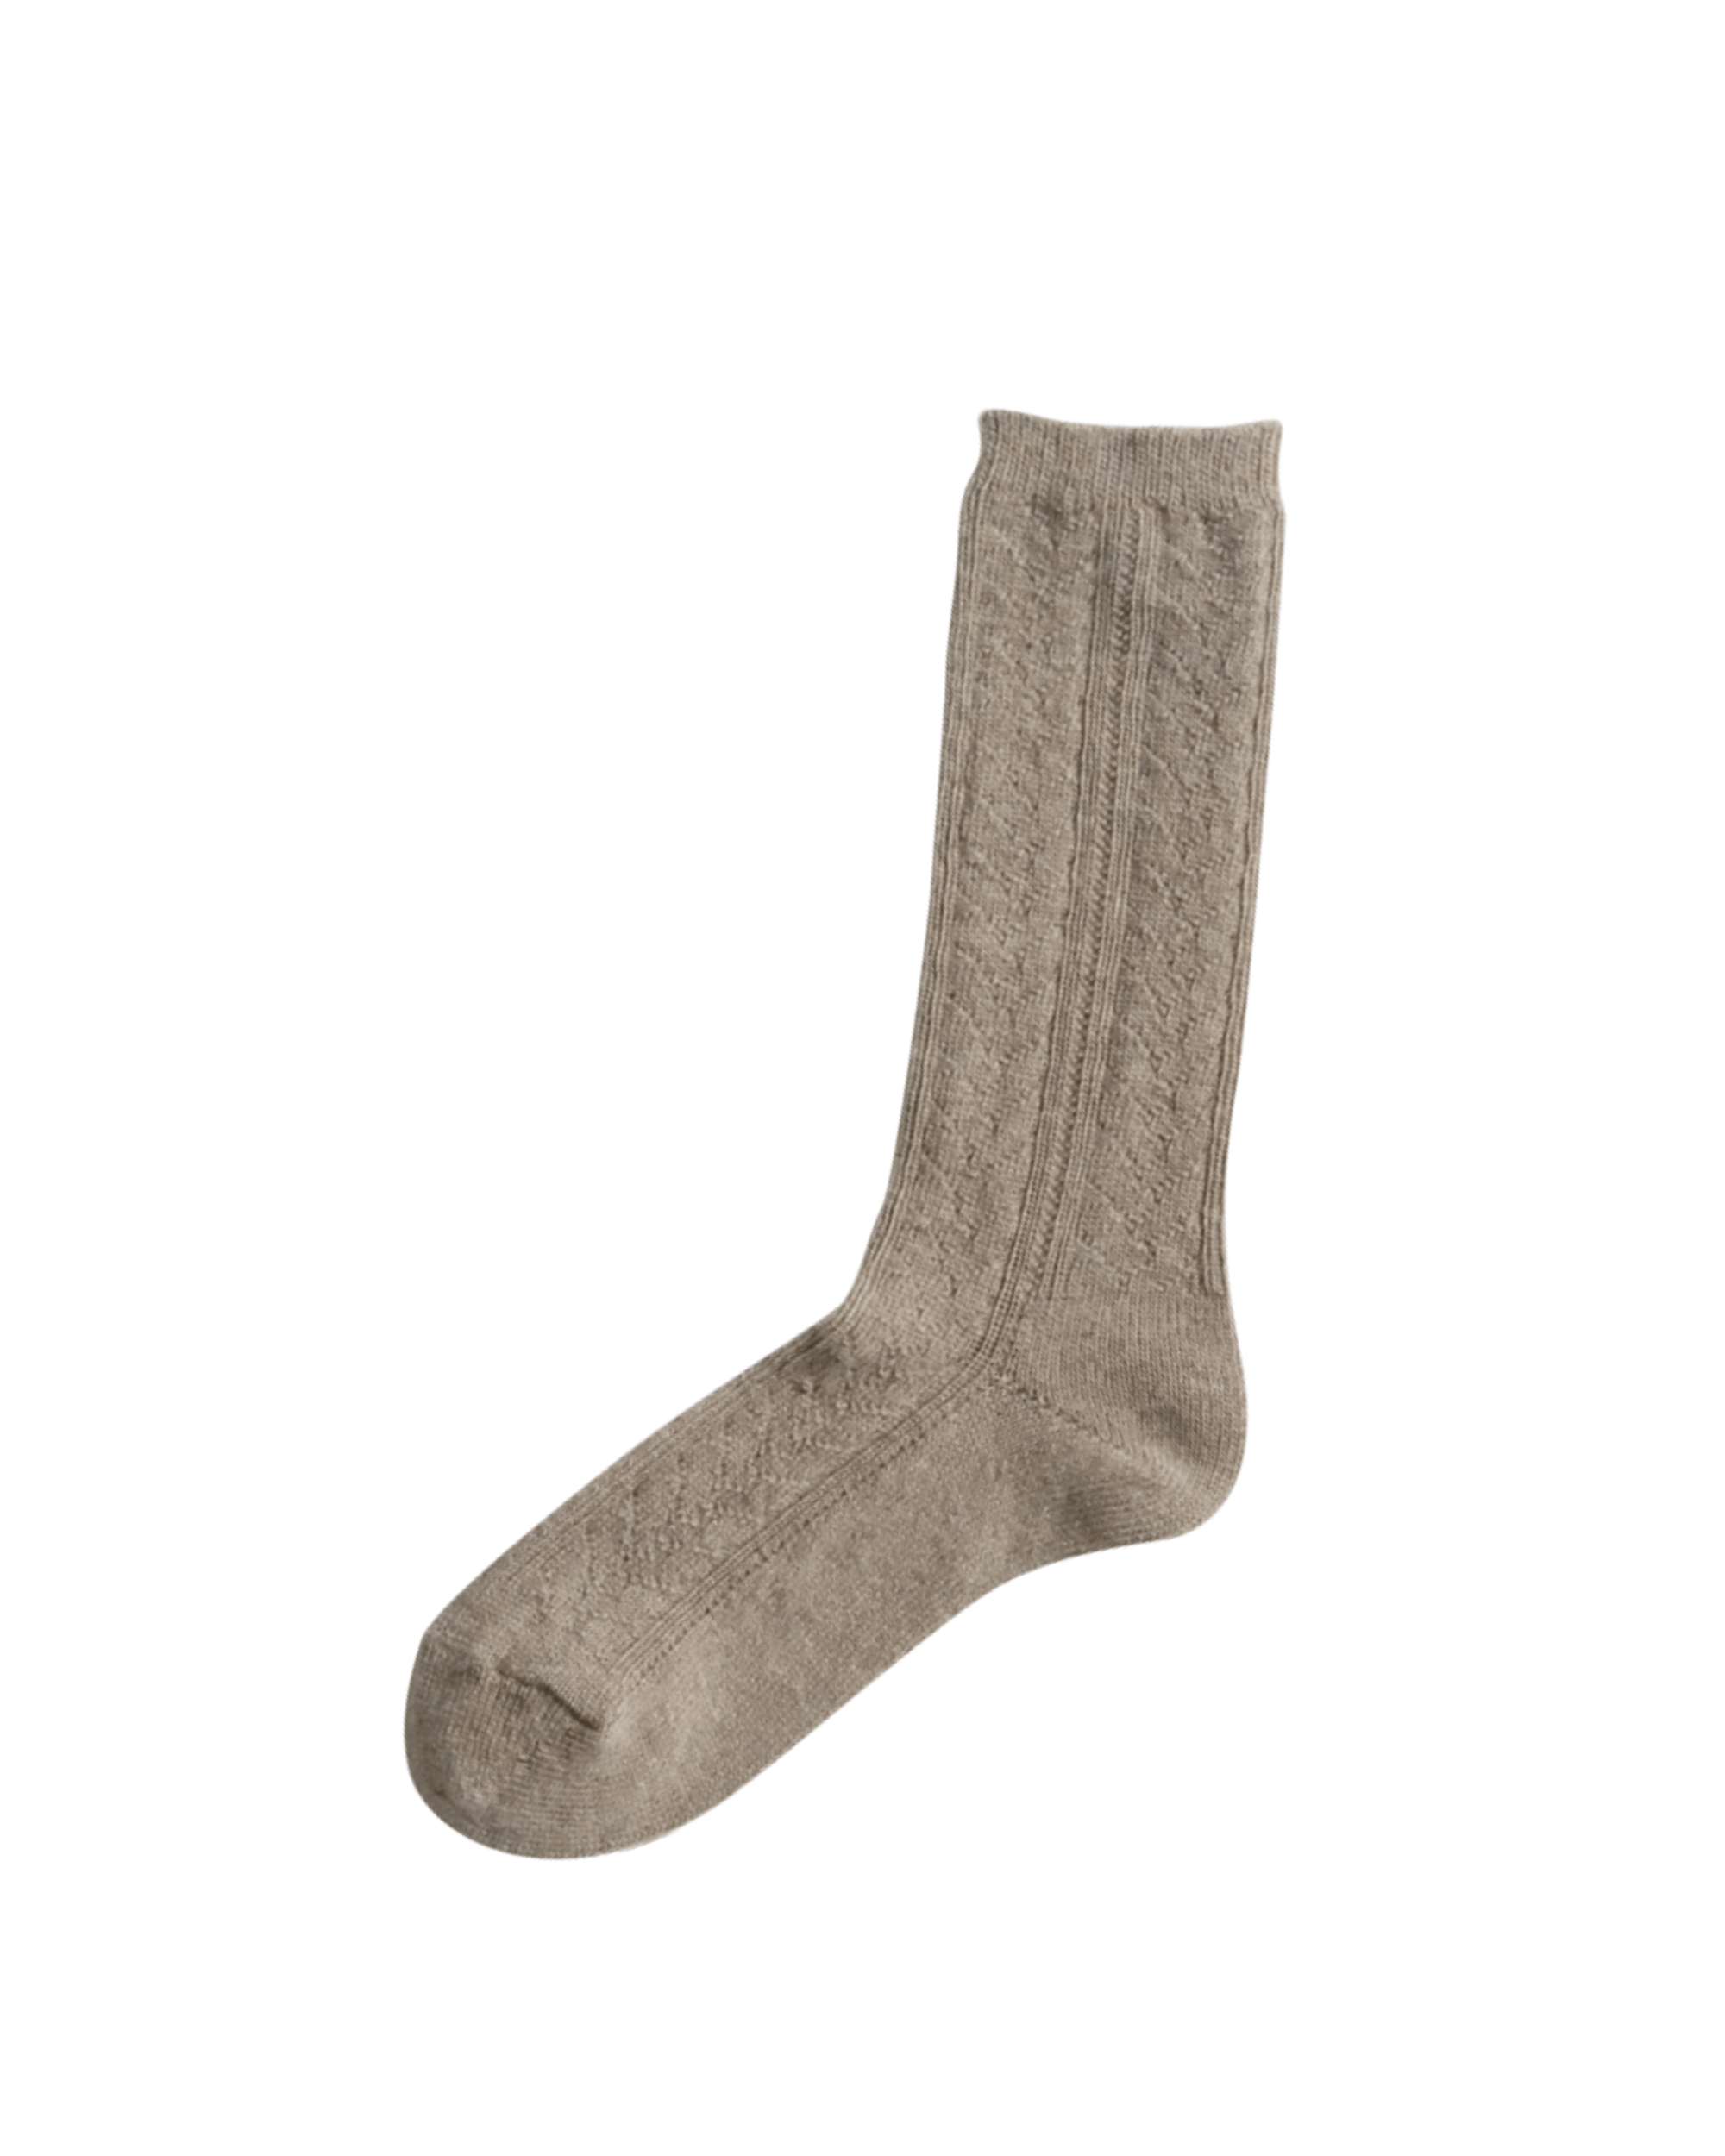 japanese wool socks